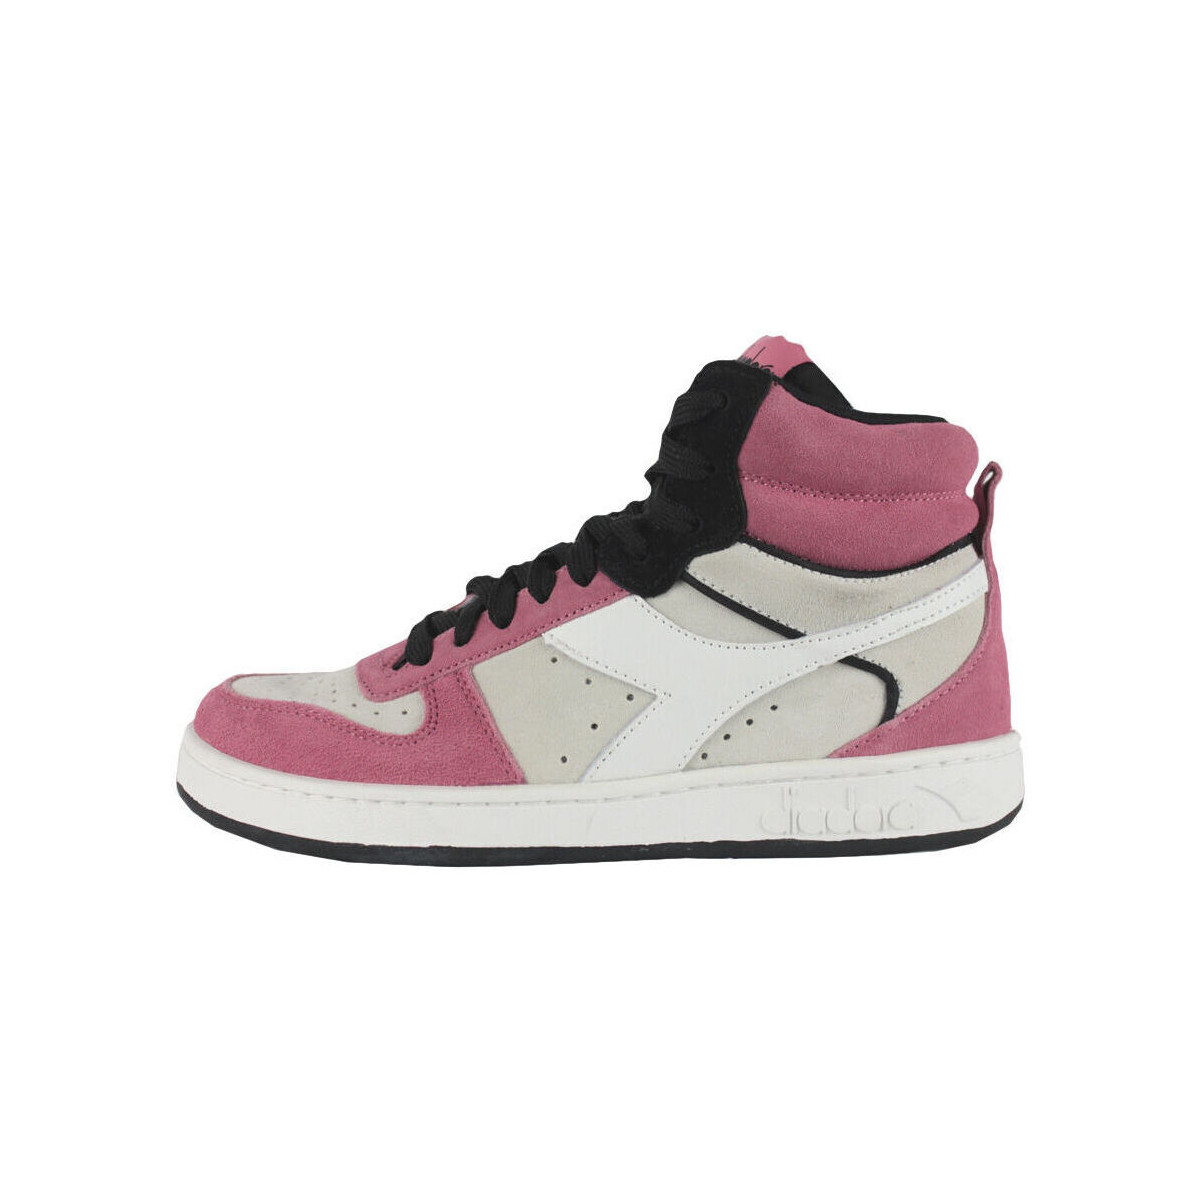 Παπούτσια Γυναίκα Sneakers Diadora 501.179011 C9996 White/Tea rose/Black Άσπρο